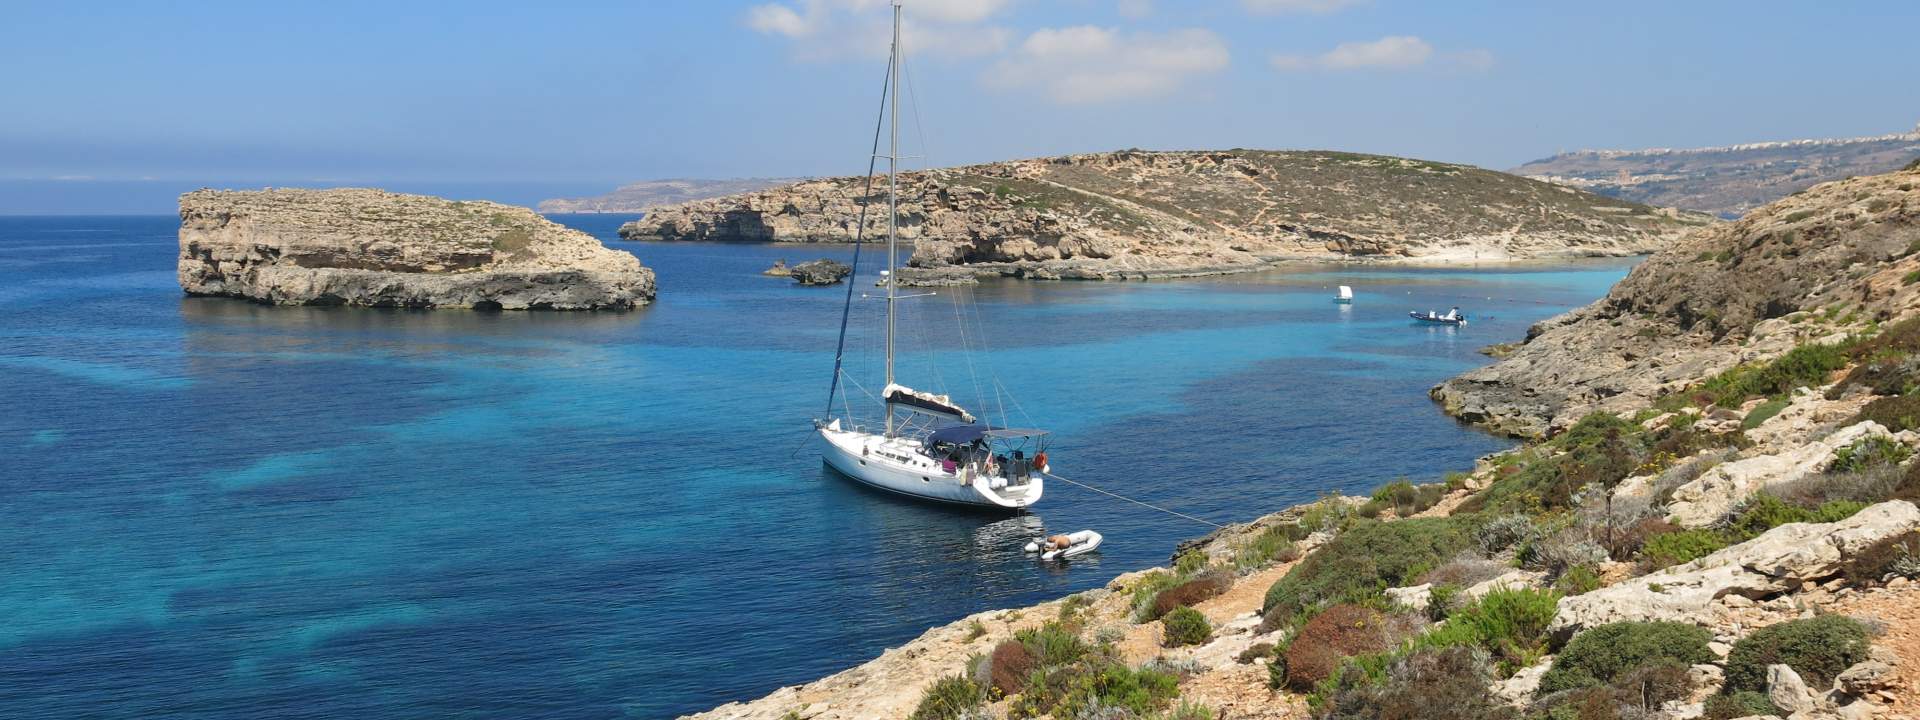 Partite alla scoperta delle isole di Malta